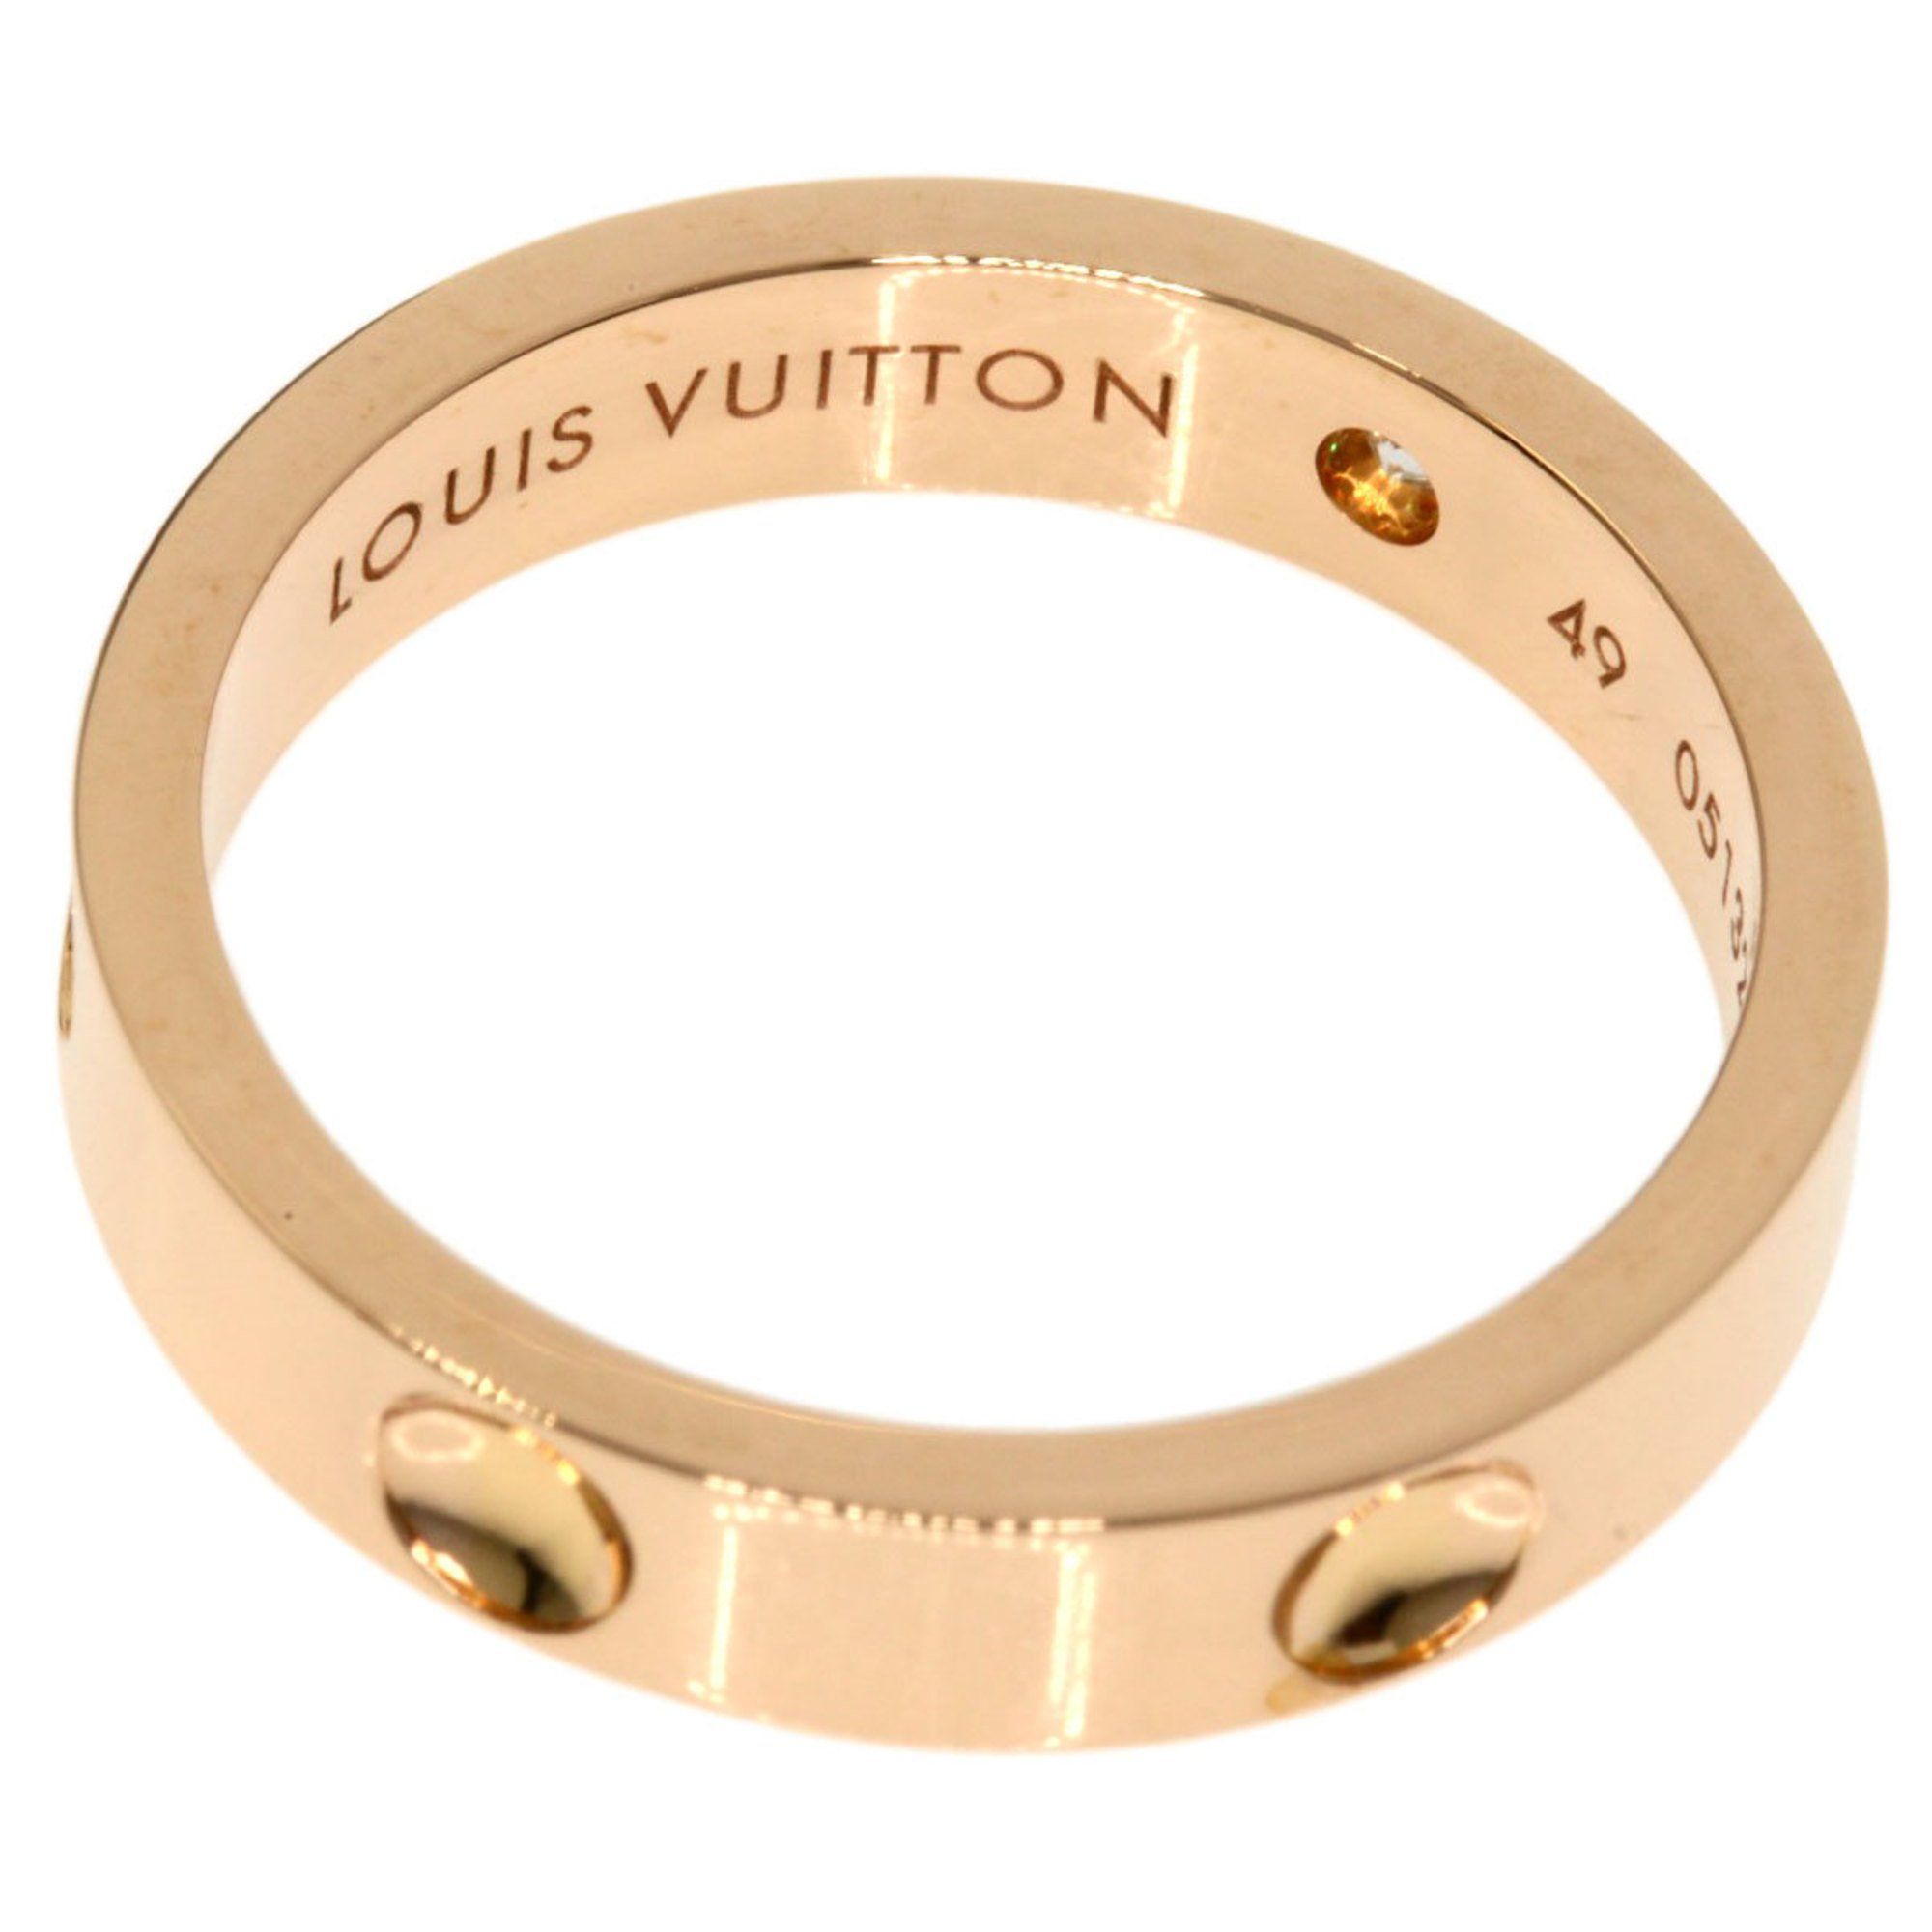 Louis Vuitton Lv Instinct Set Of 2 Rings (M00514)